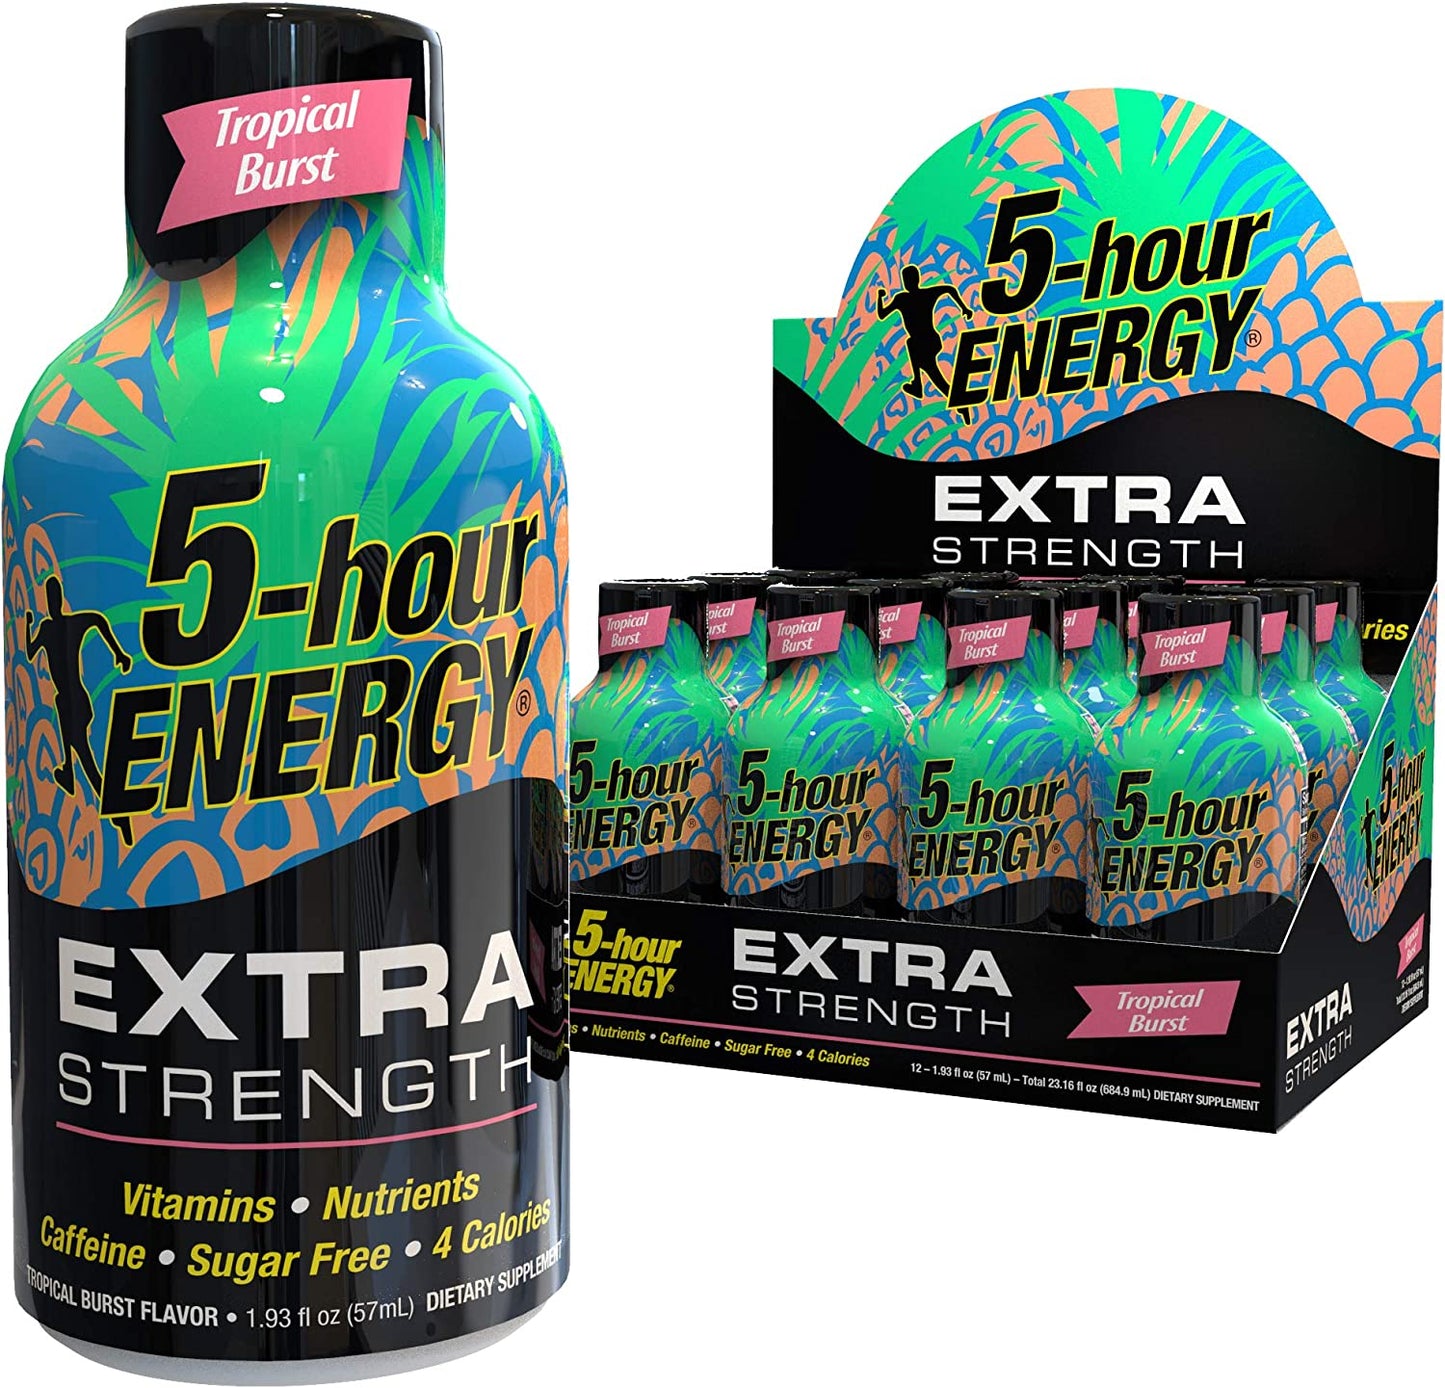 Tropical Burst Extra Strength 5-Hour Energy - 12 Bottles